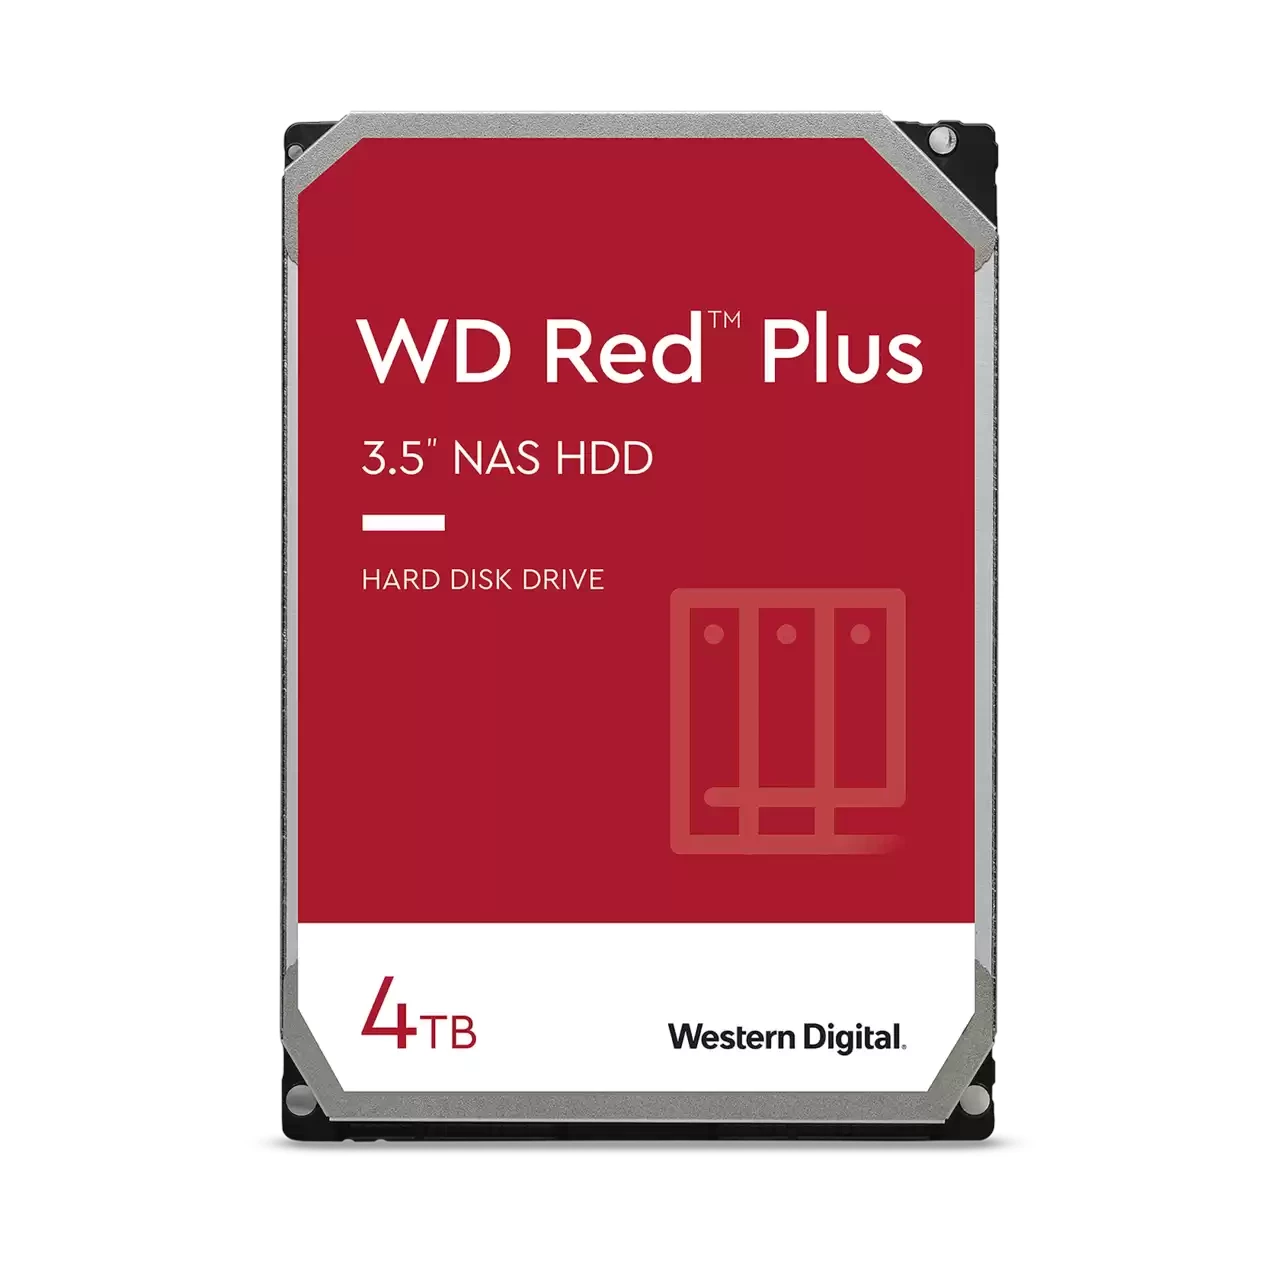 WD Red Plus 4Tb 3.5" NAS Hard Drive (256Mb 5400rpm SATA3) #WD40EFPX